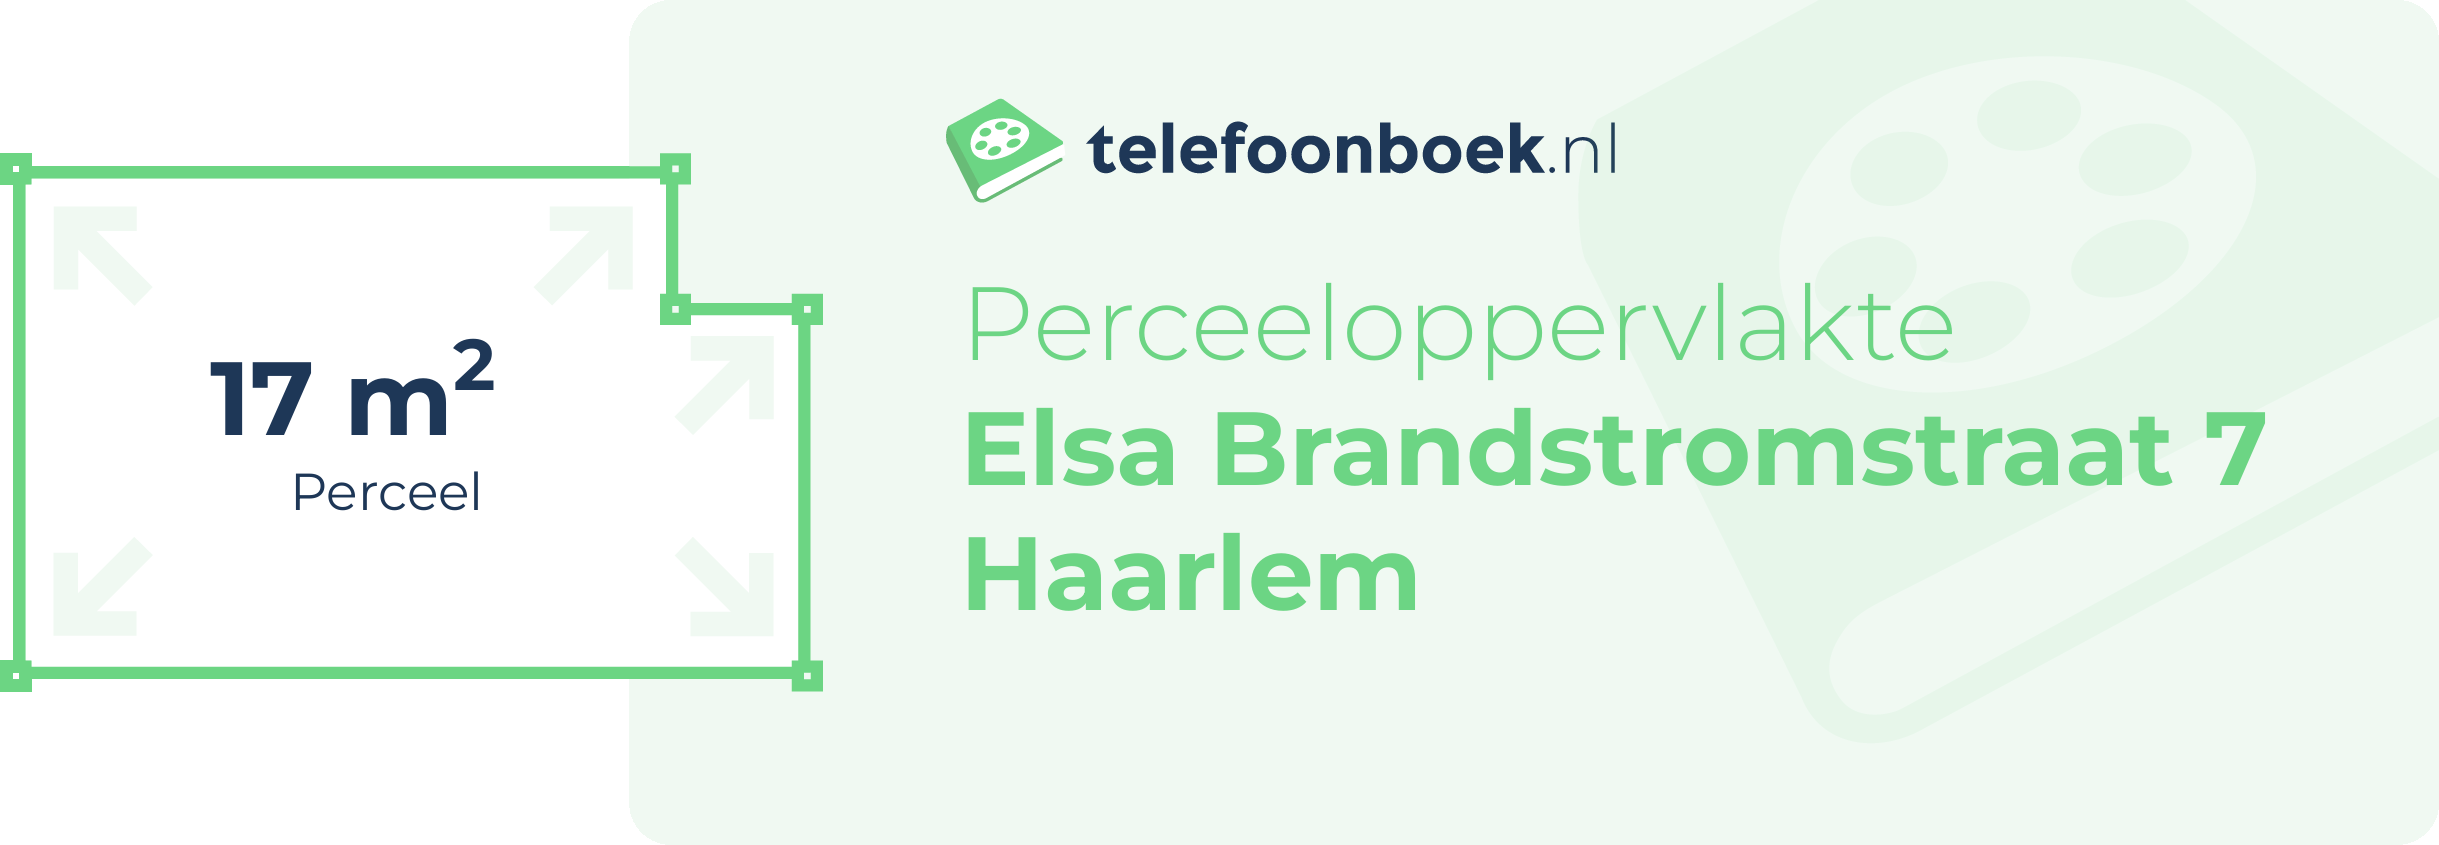 Perceeloppervlakte Elsa Brandstromstraat 7 Haarlem